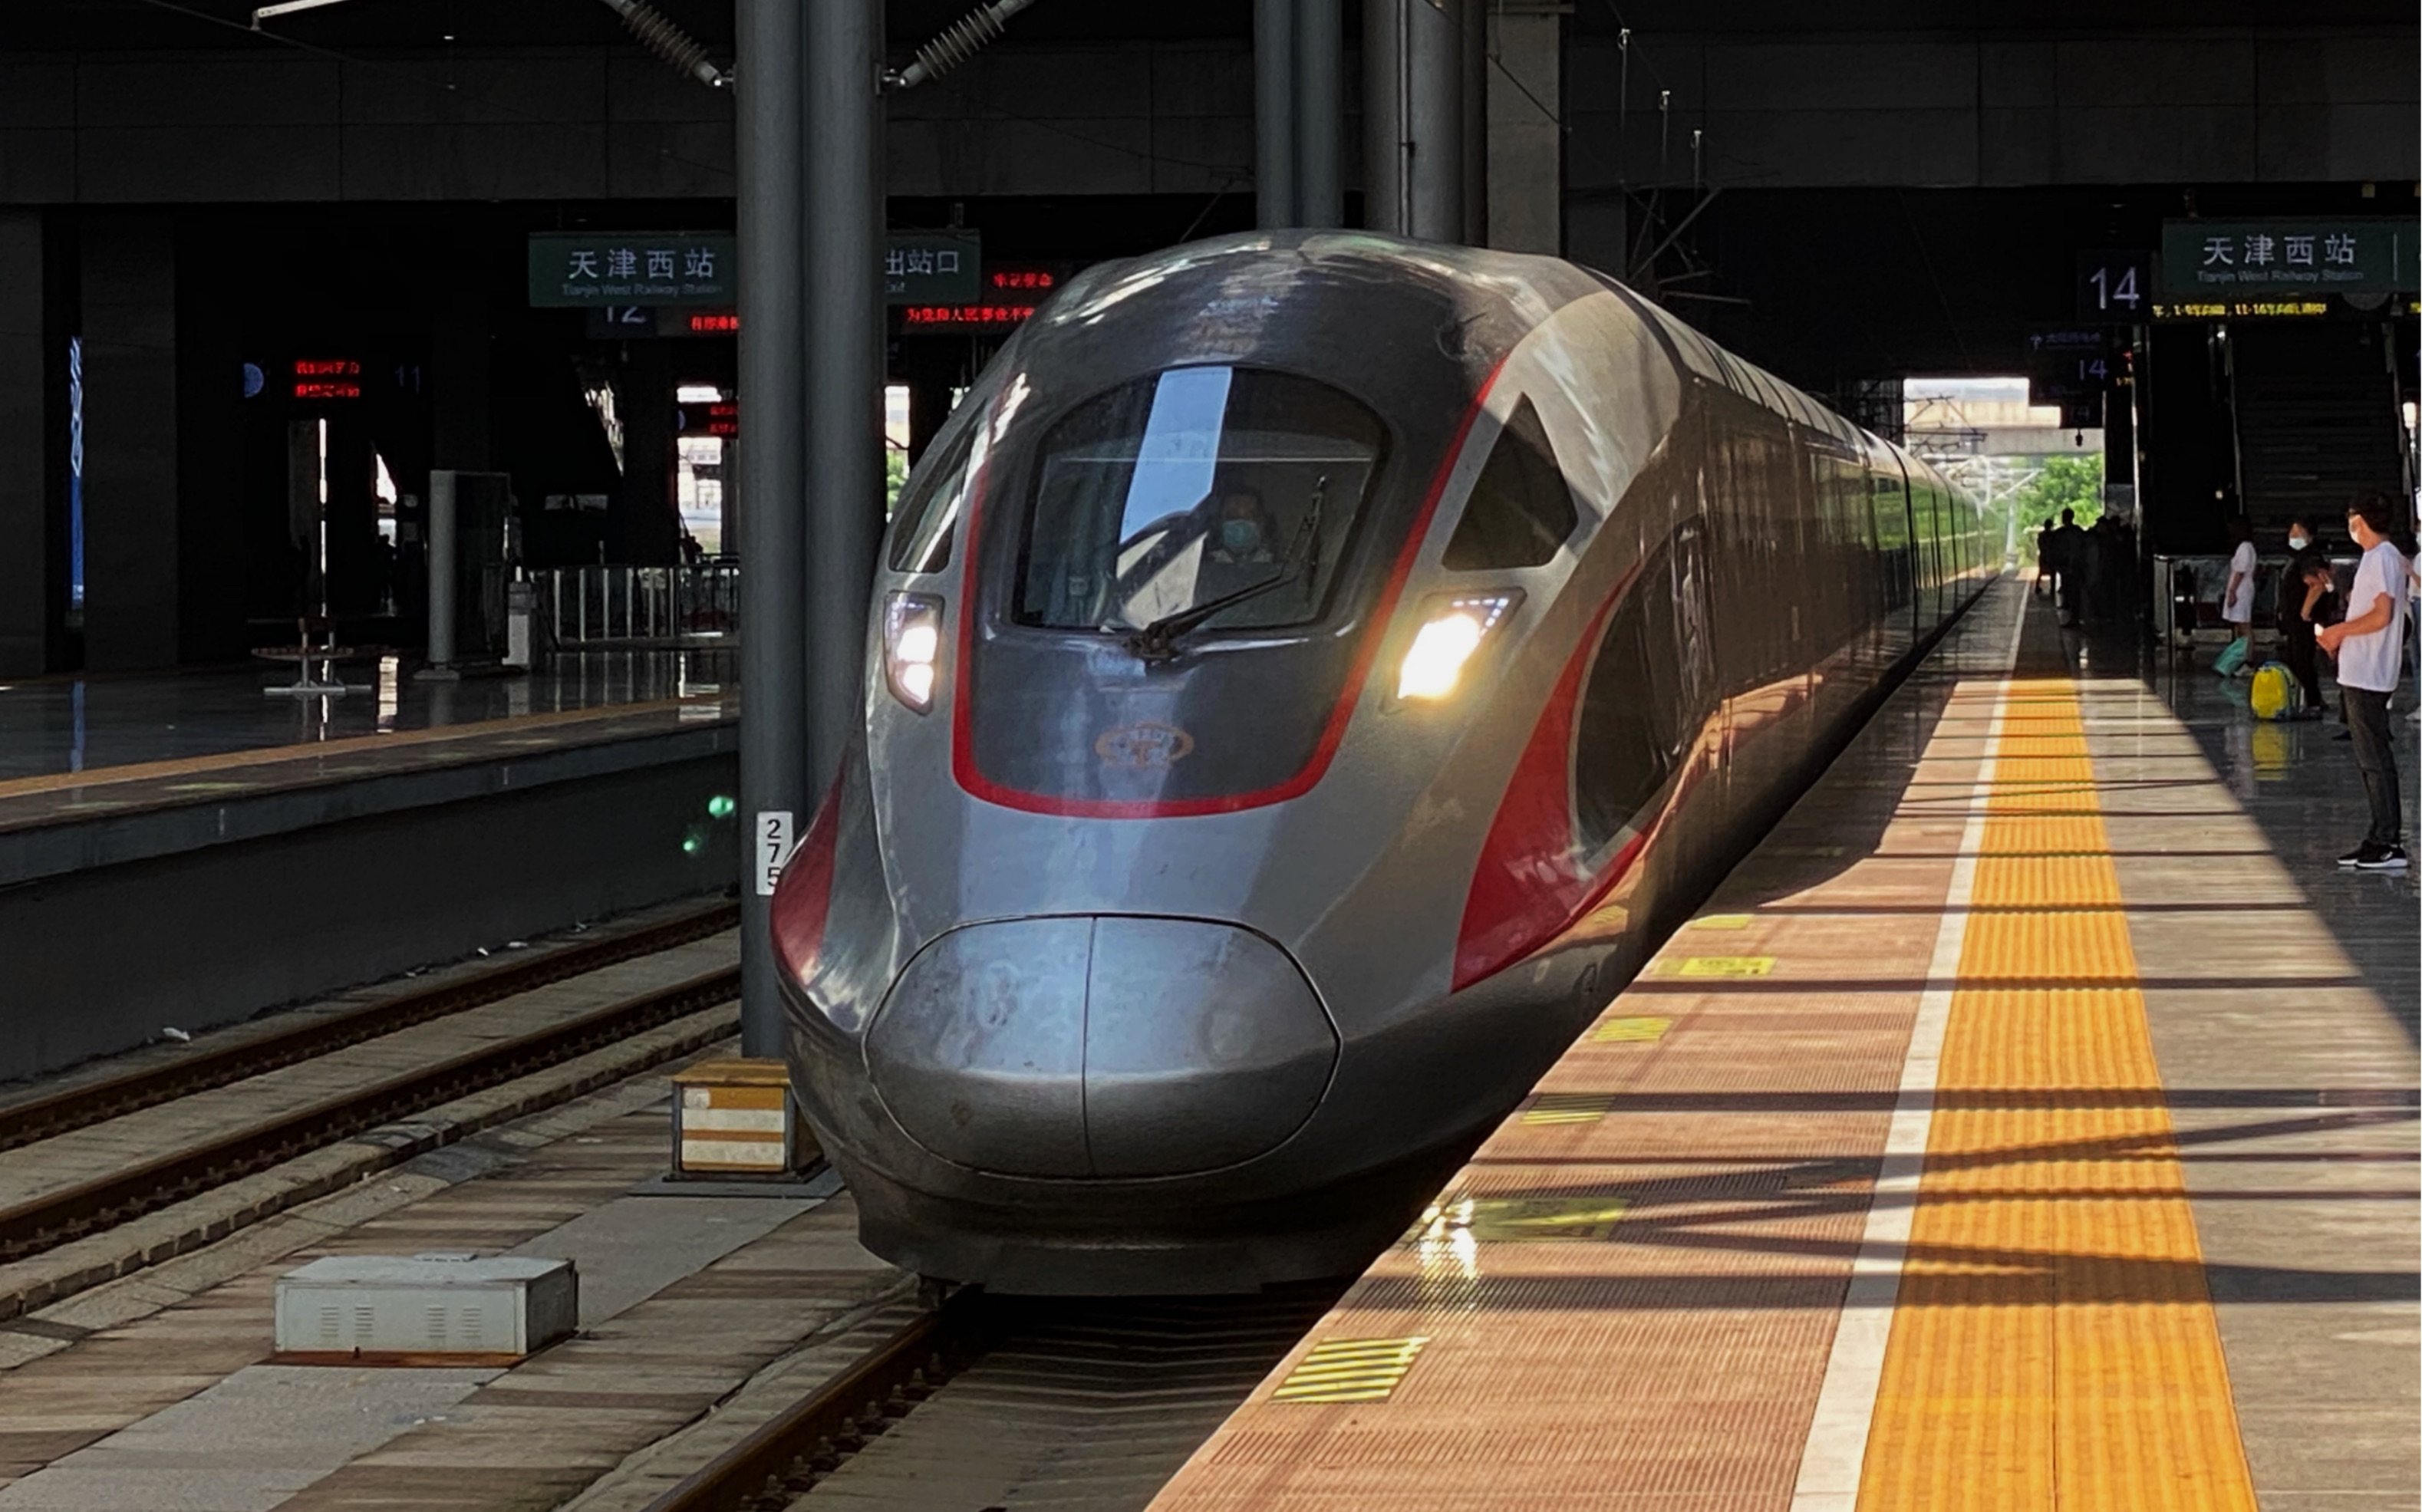 【中国铁路】重连cr400af担当暑运临客g6295天津站出站